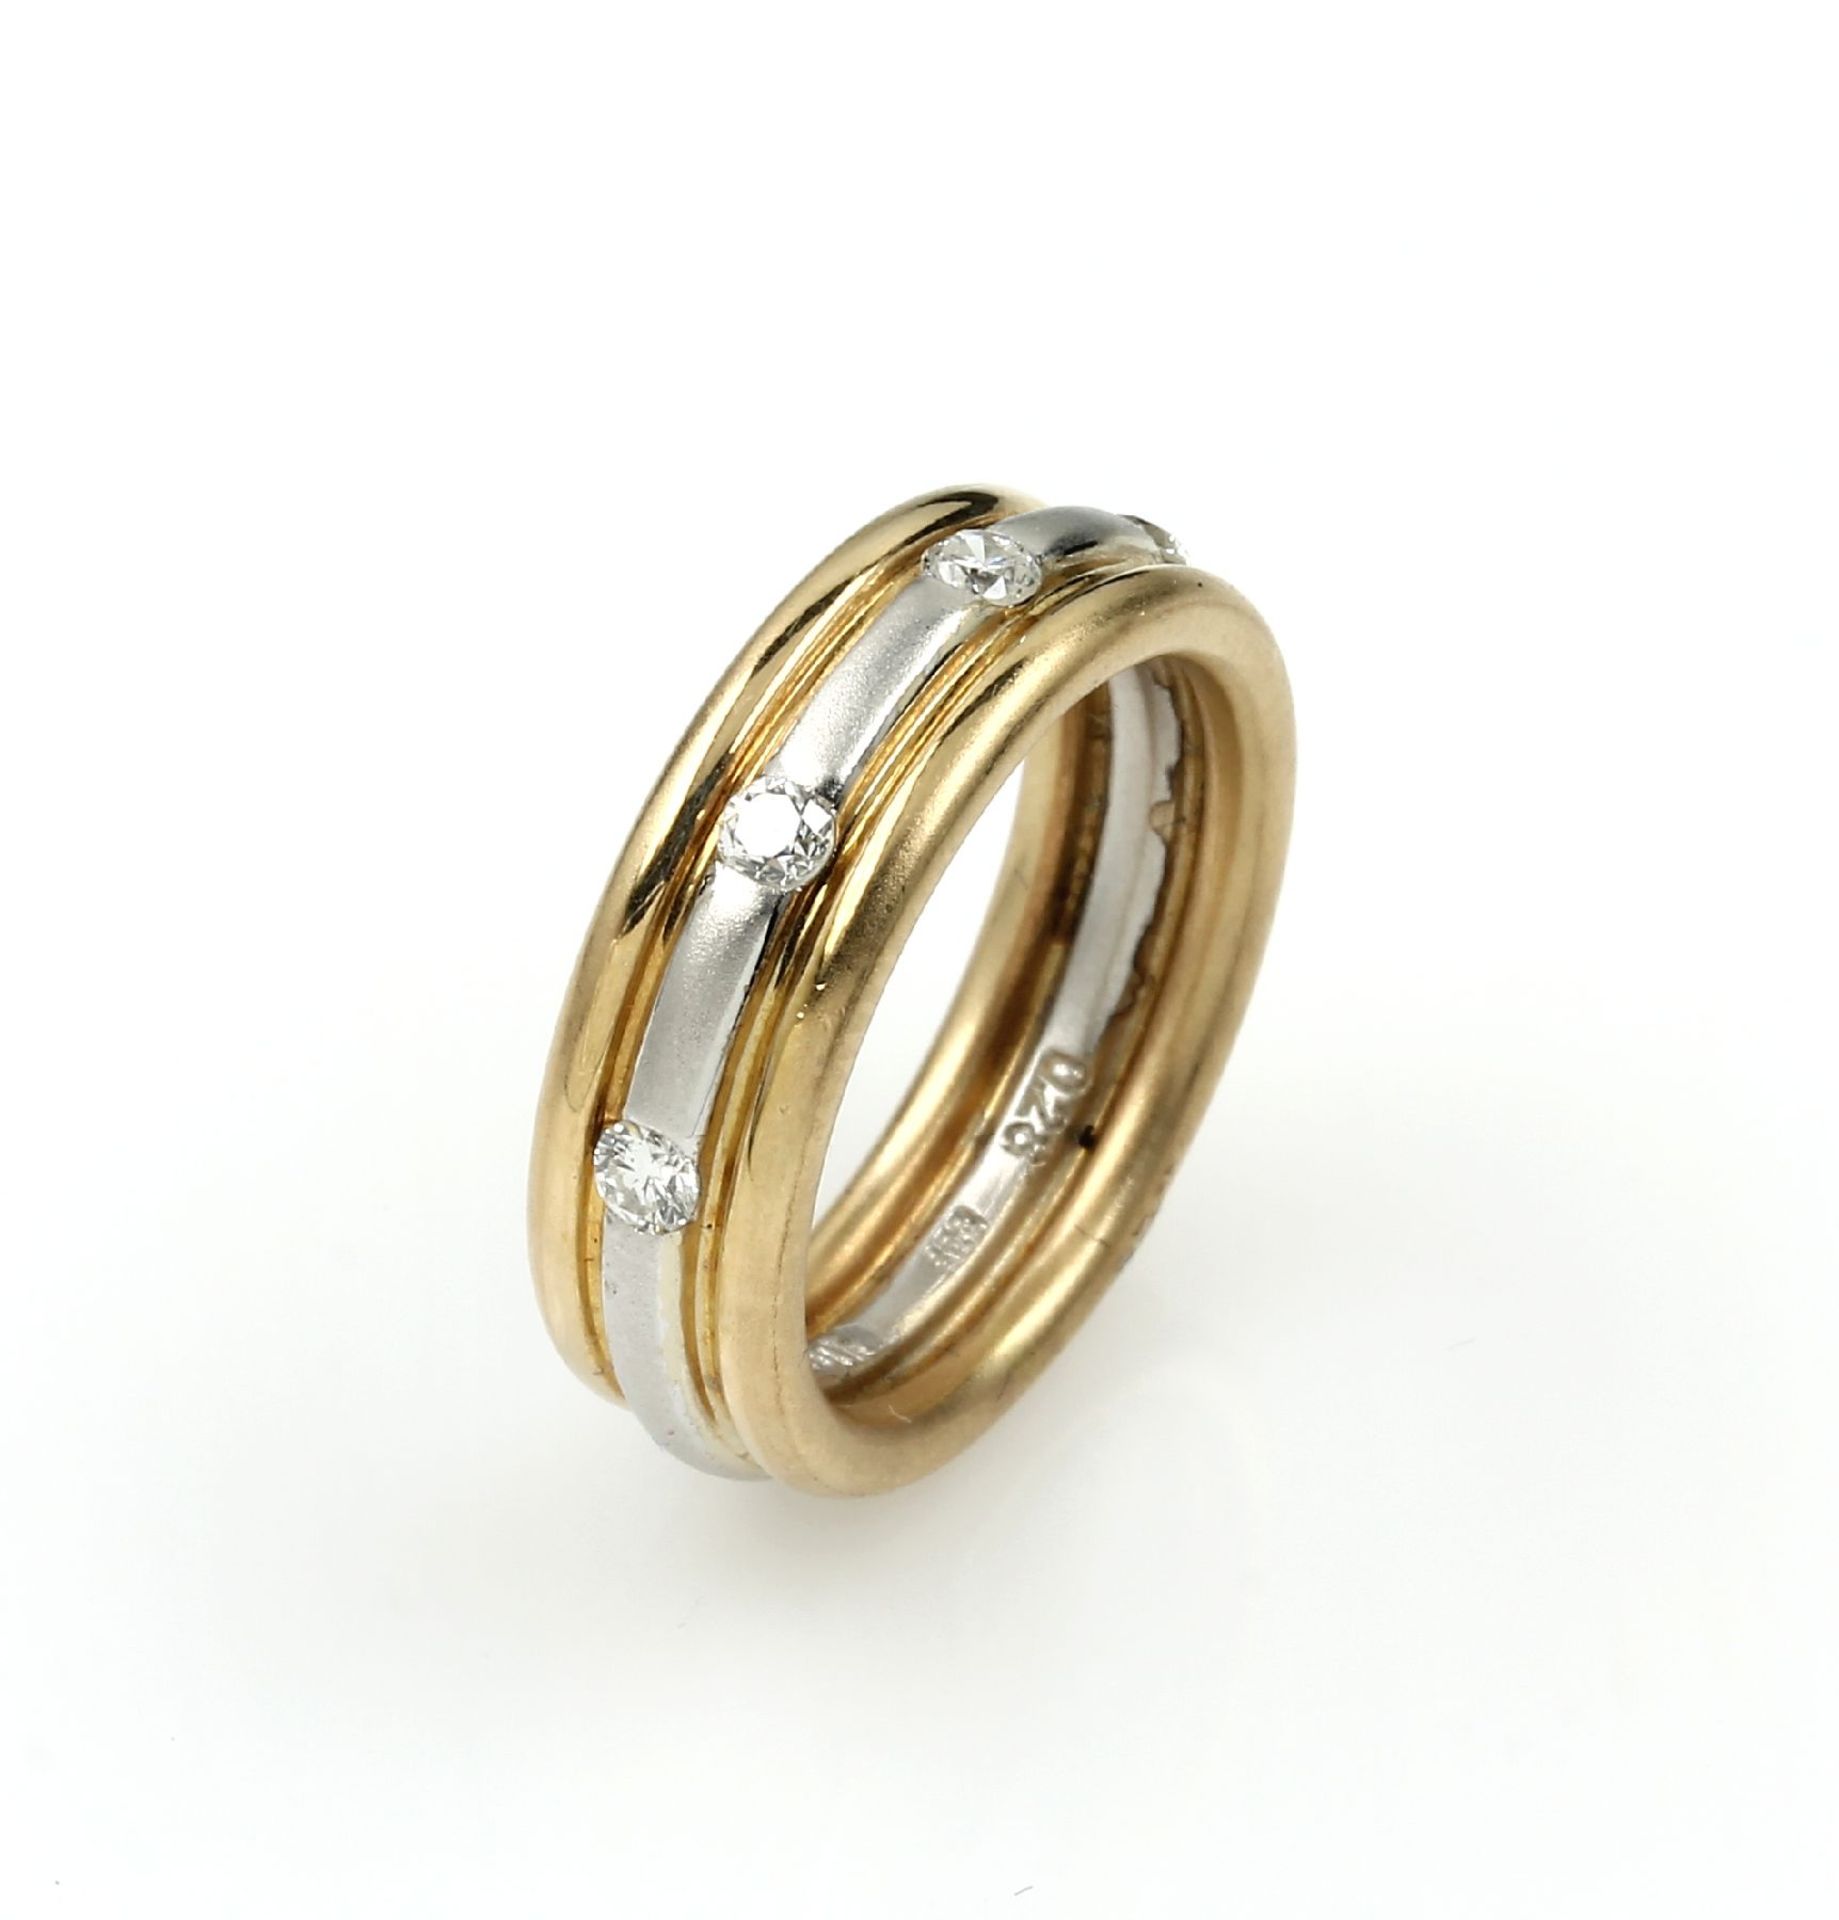 14 kt Gold Ring mit Brillanten, GG/WG 585/000, Ringschiene z.T. sat., mittig in WG gearbeitet, 4